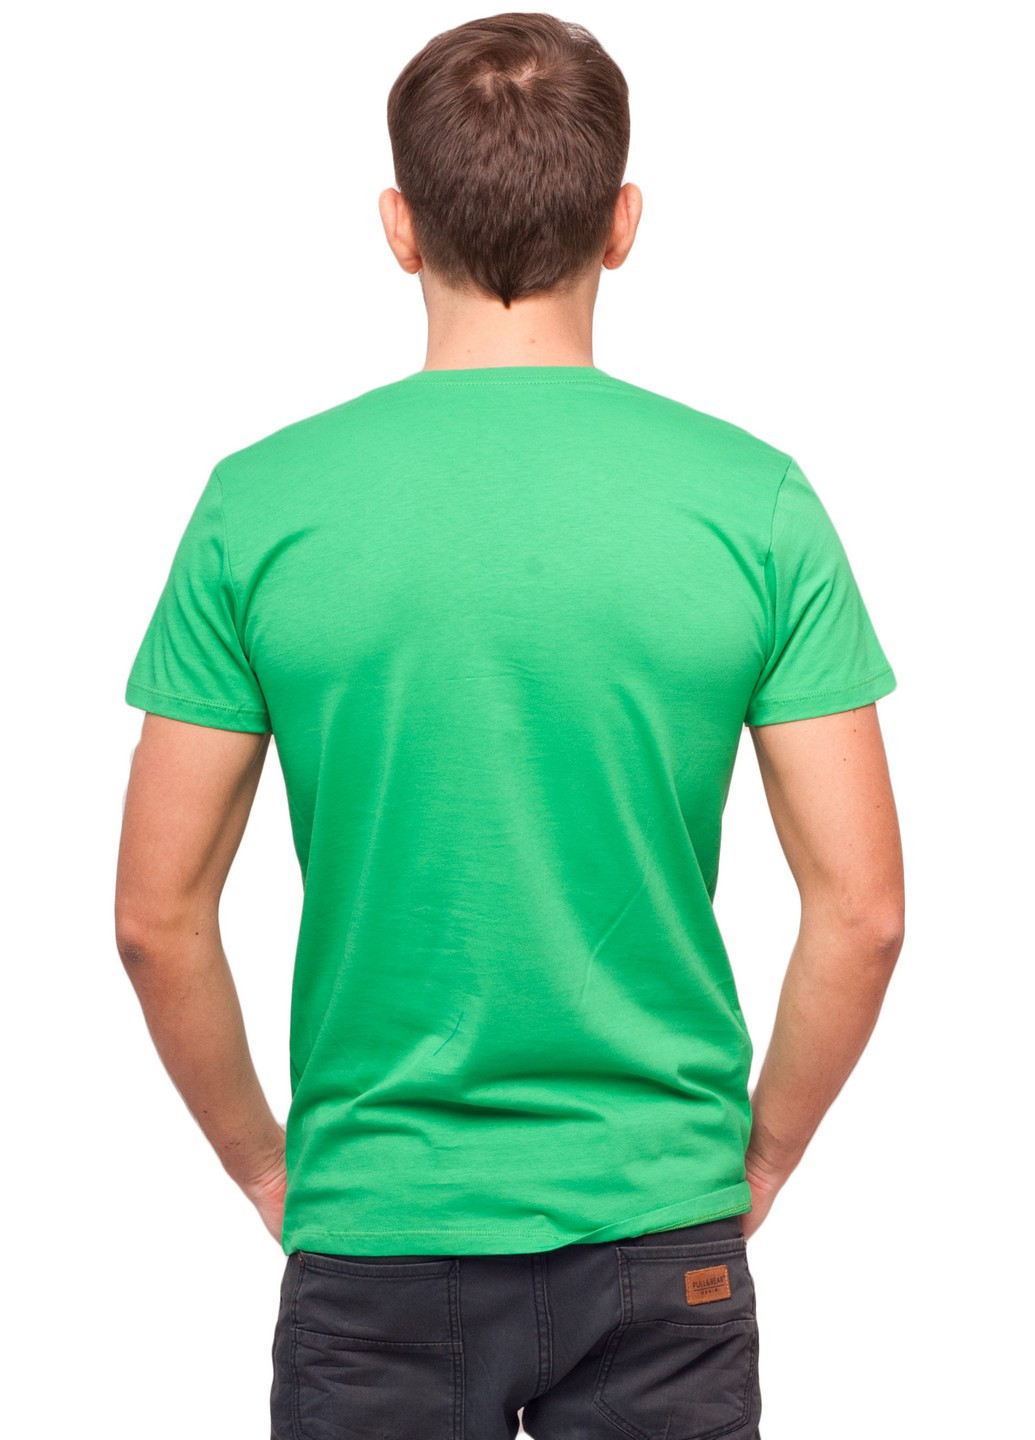 Зеленая футболка мужская Наталюкс 12-1338